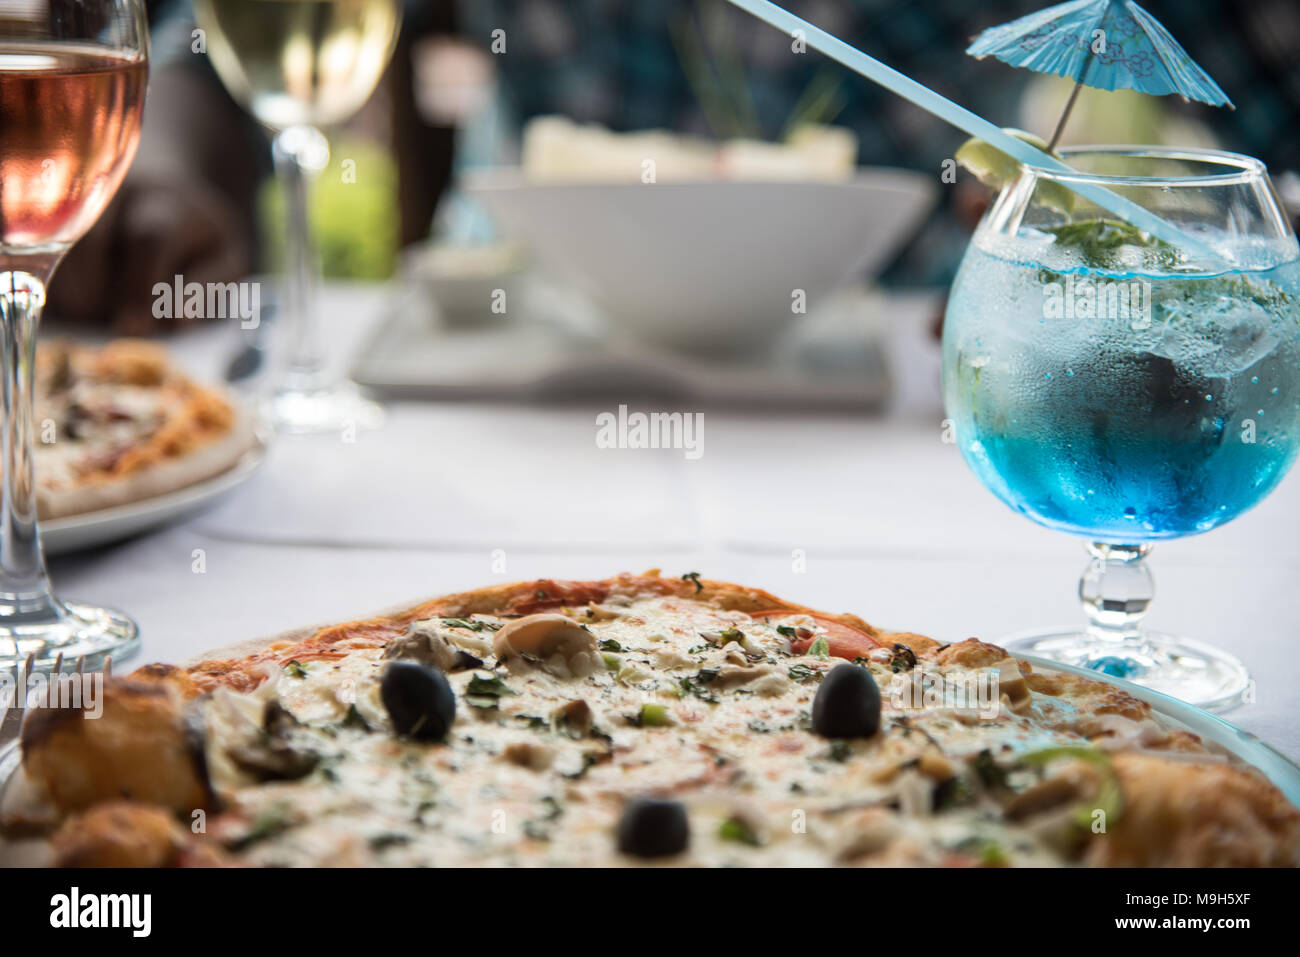 Foto von Restaurant Tisch mit zwei Pizzen und einen Salat. Auch ein helles Blau Cocktail und Glas rosa Wein. Stockfoto